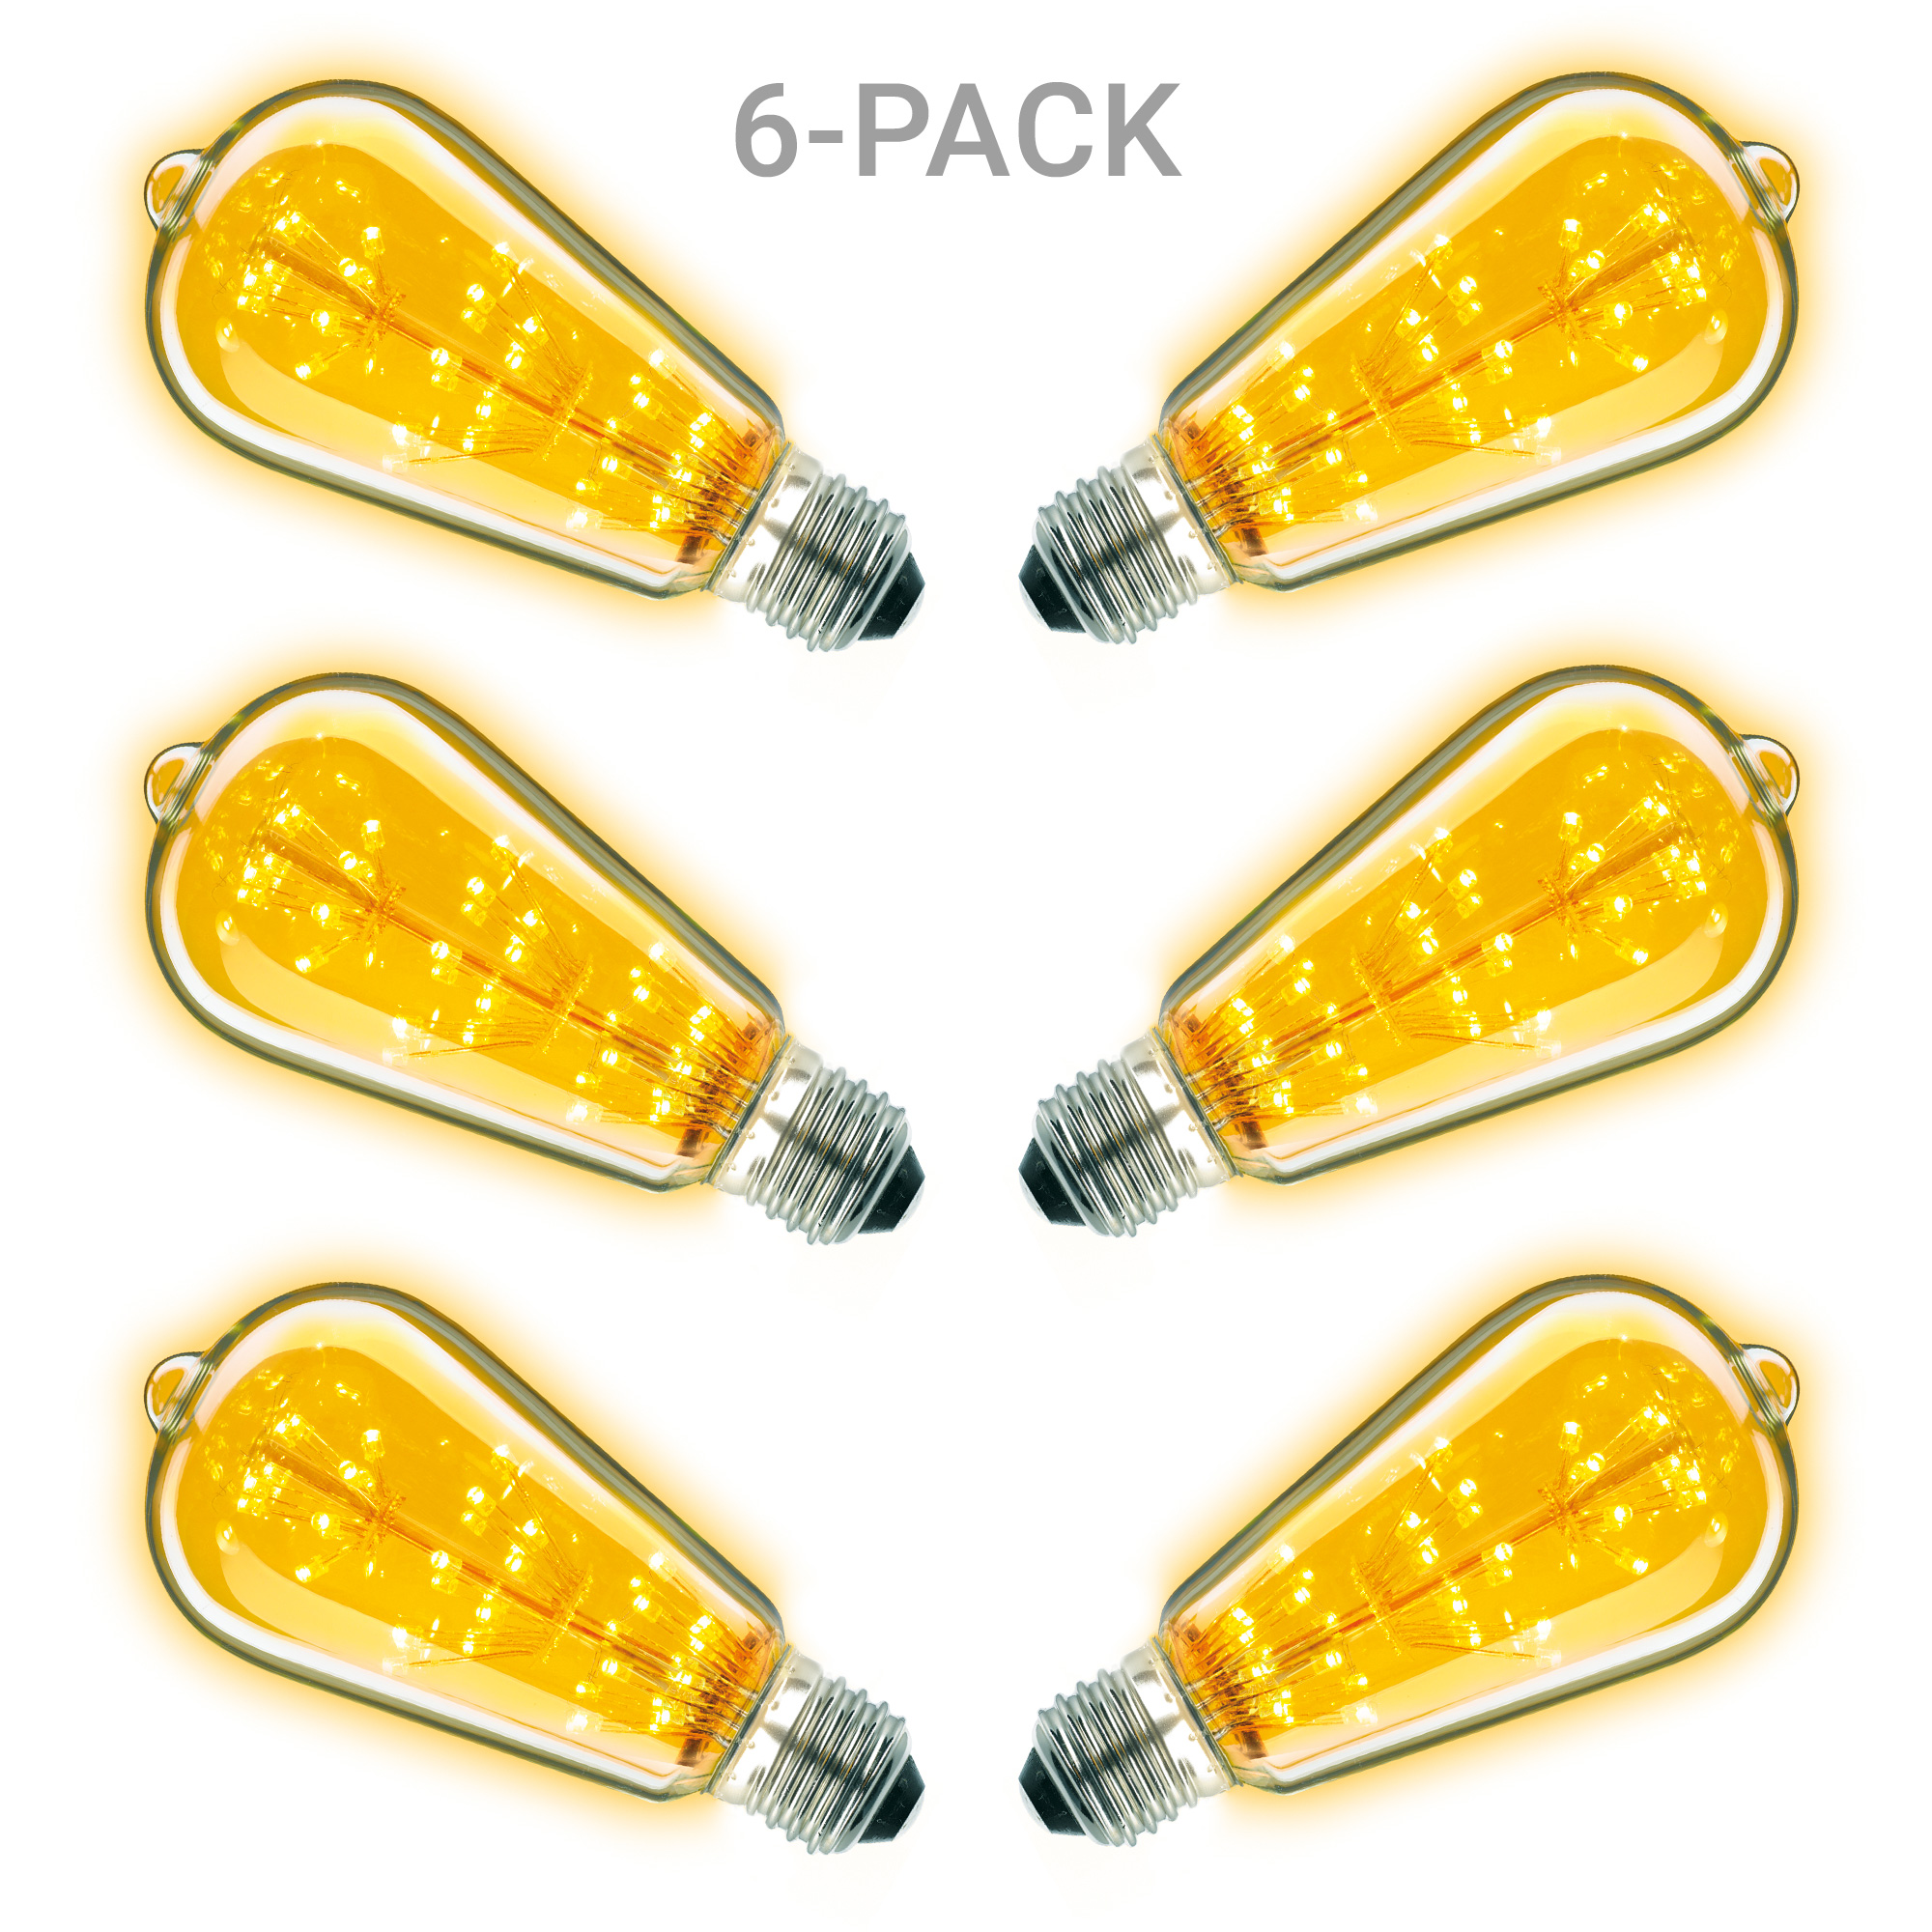 6-pack Rustic LED lamp